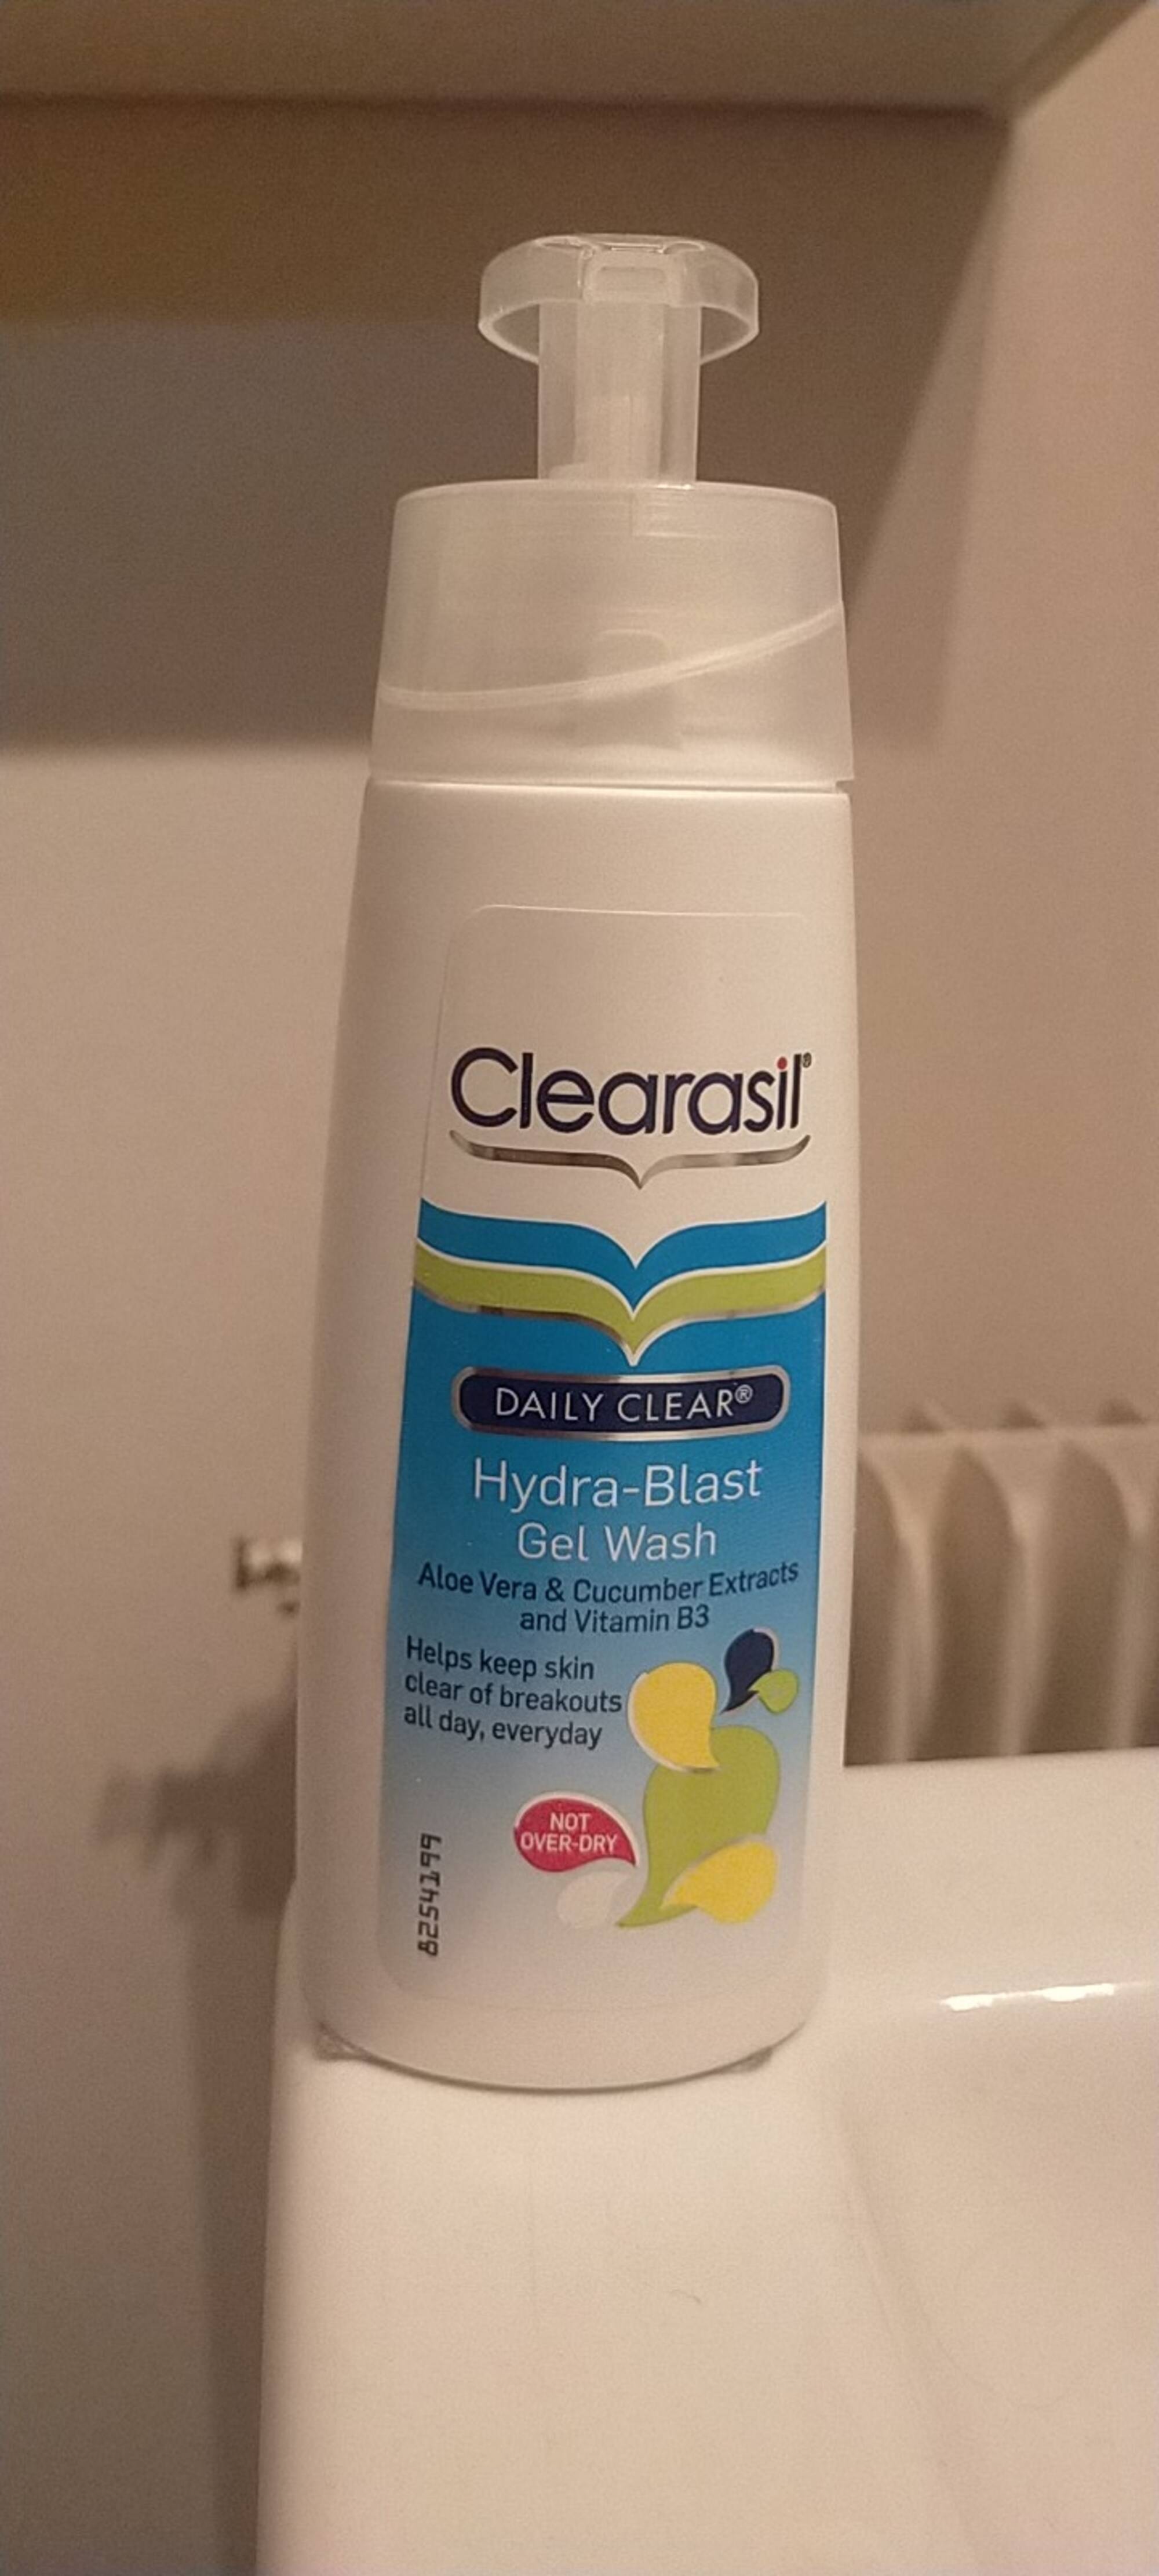 CLEARASIL - Daily clear - Hydra-blast gel wash